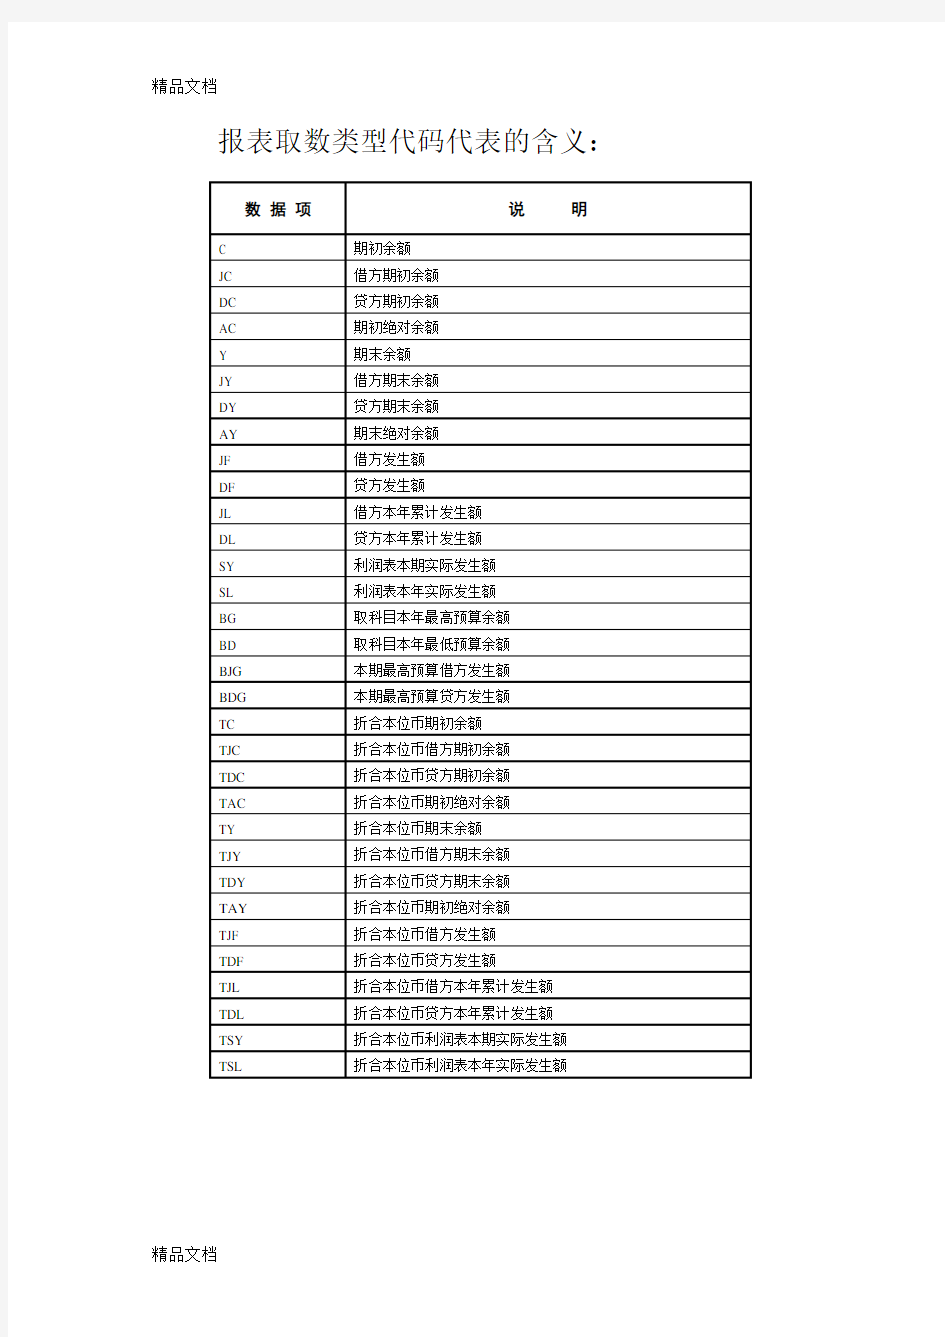 金蝶报表取数类型代码代表的含义资料